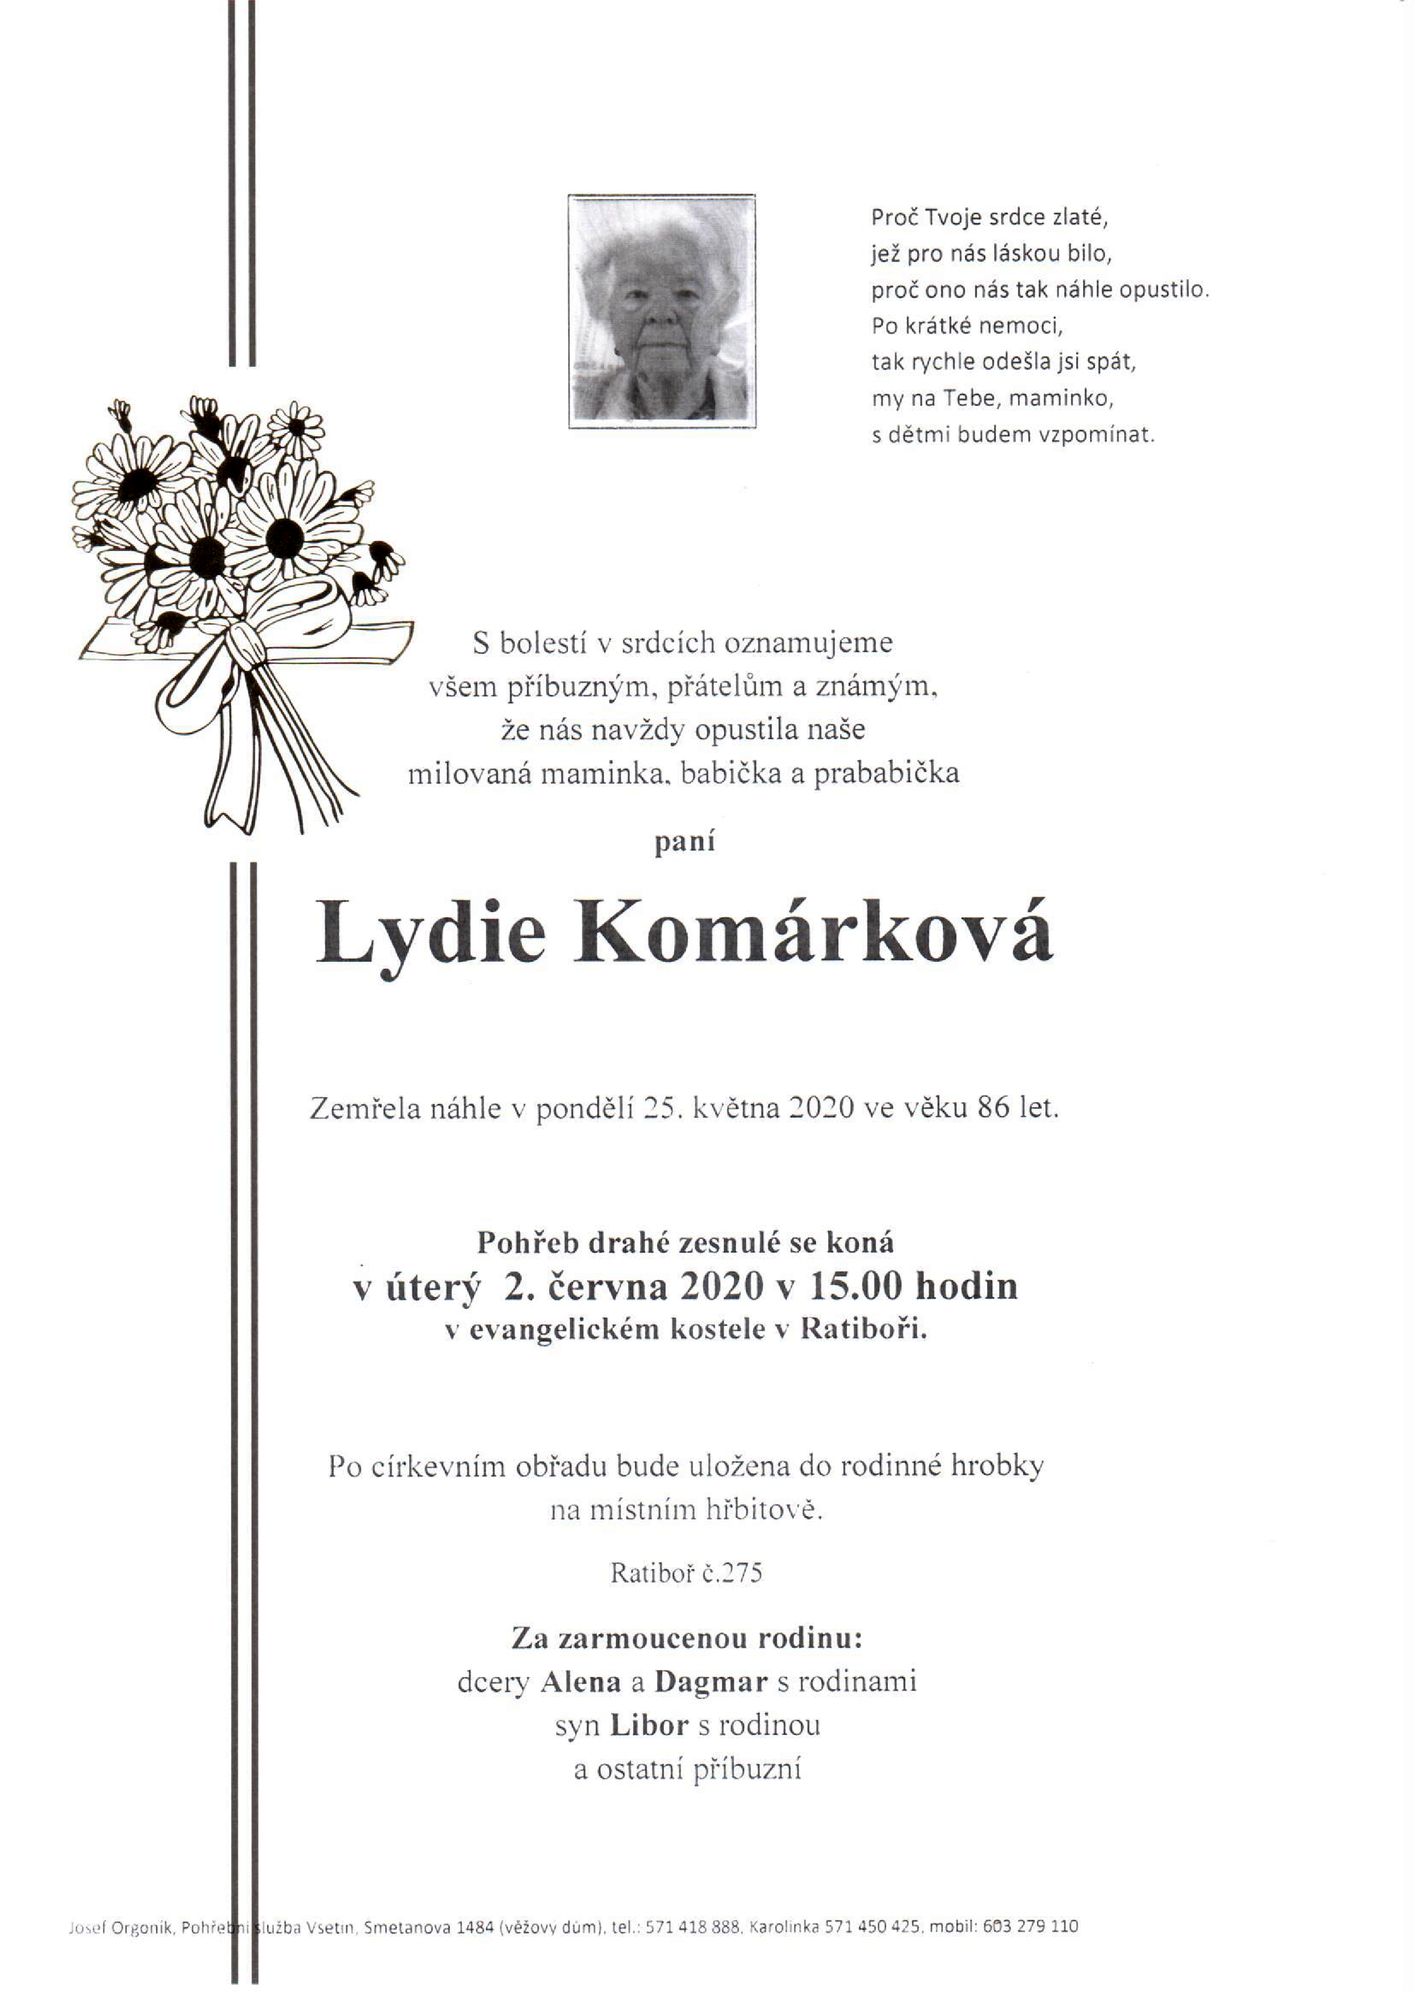 Lydie Komárková